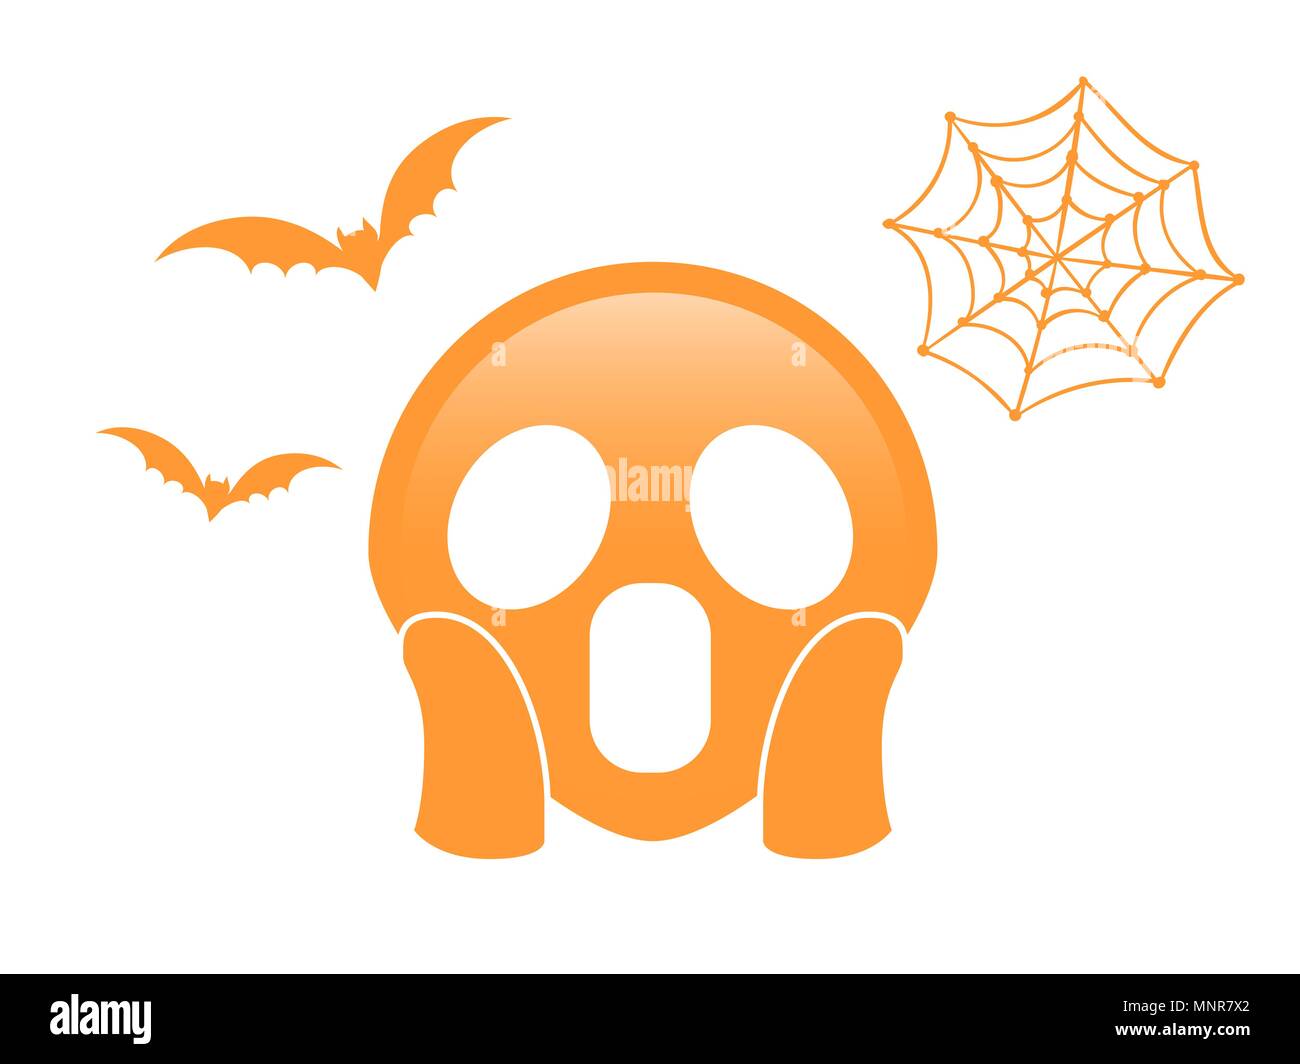 Die isolierte orange unheimlich und gruselig eben Symbol mit Flying bat und Spider Net Stock Vektor